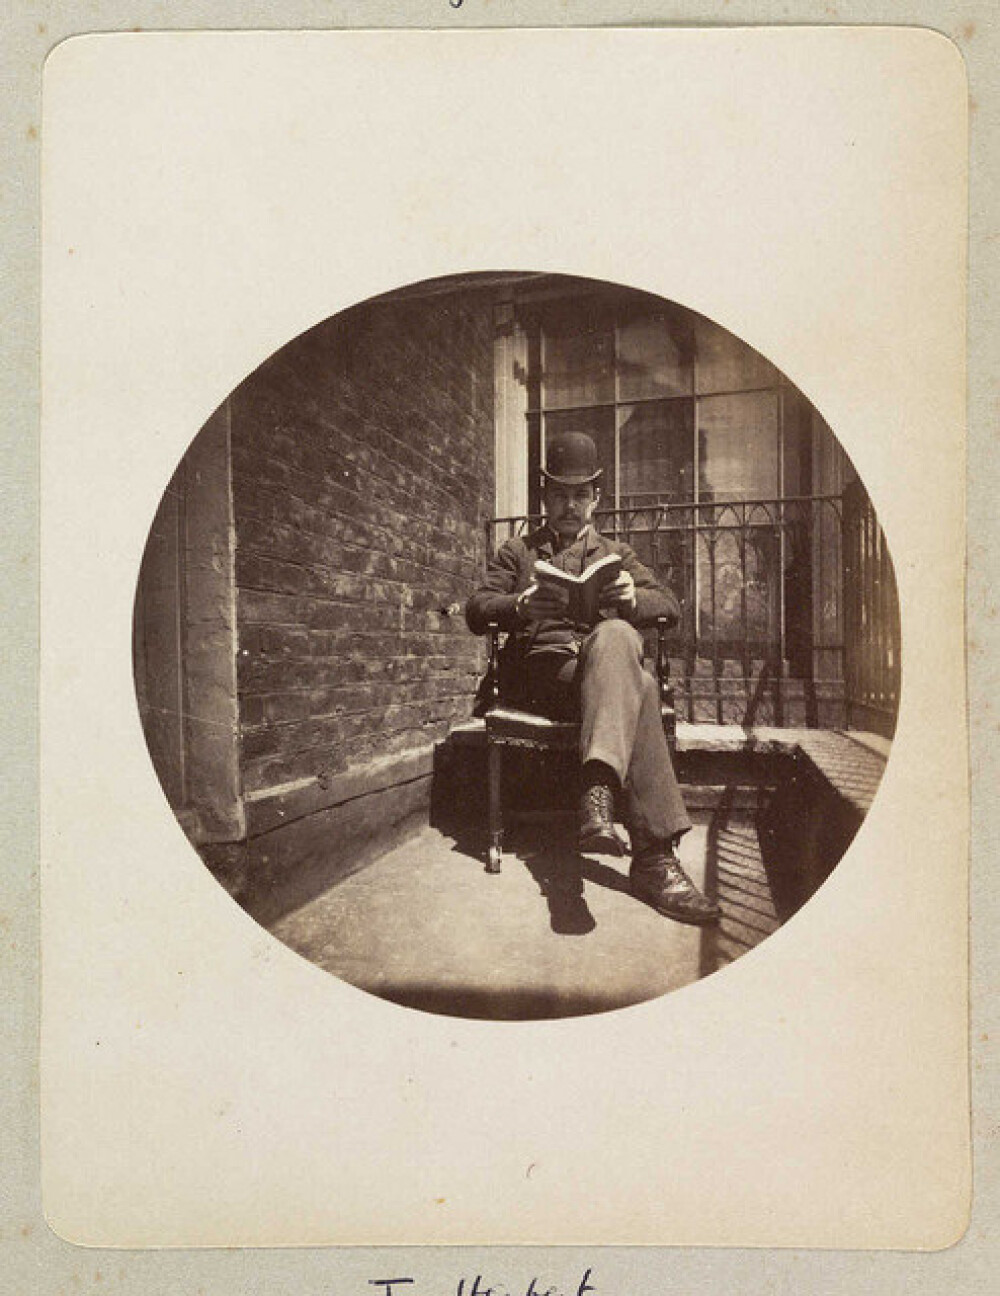 Imagini de acum 130 de ani. Primele fotografii de tip amator, realizate in 1880 - Imaginea 3